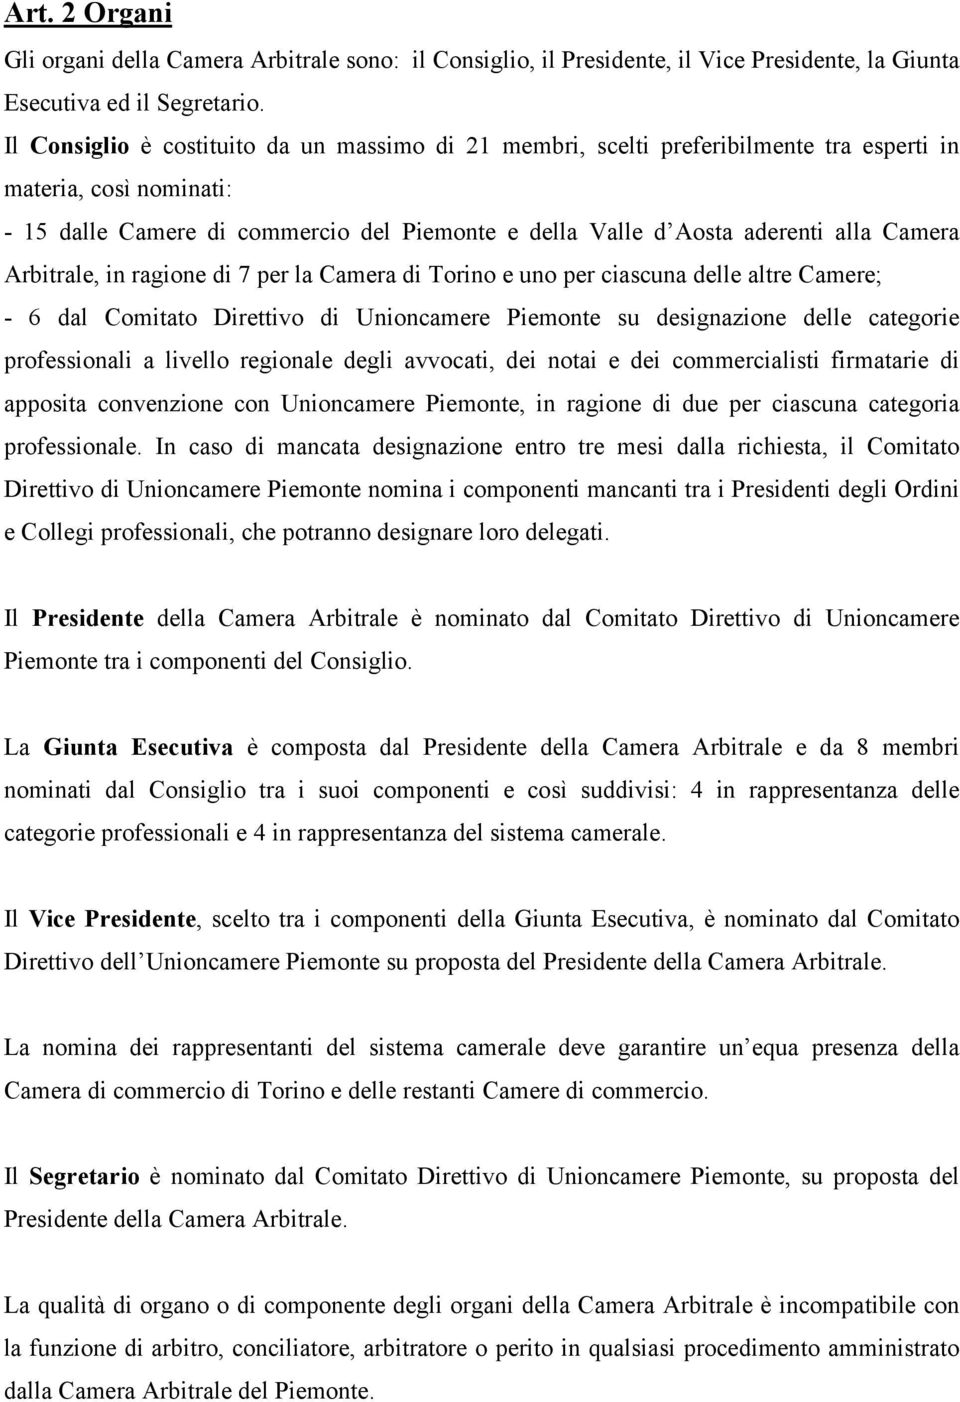 Camera Arbitrale, in ragione di 7 per la Camera di Torino e uno per ciascuna delle altre Camere; - 6 dal Comitato Direttivo di Unioncamere Piemonte su designazione delle categorie professionali a